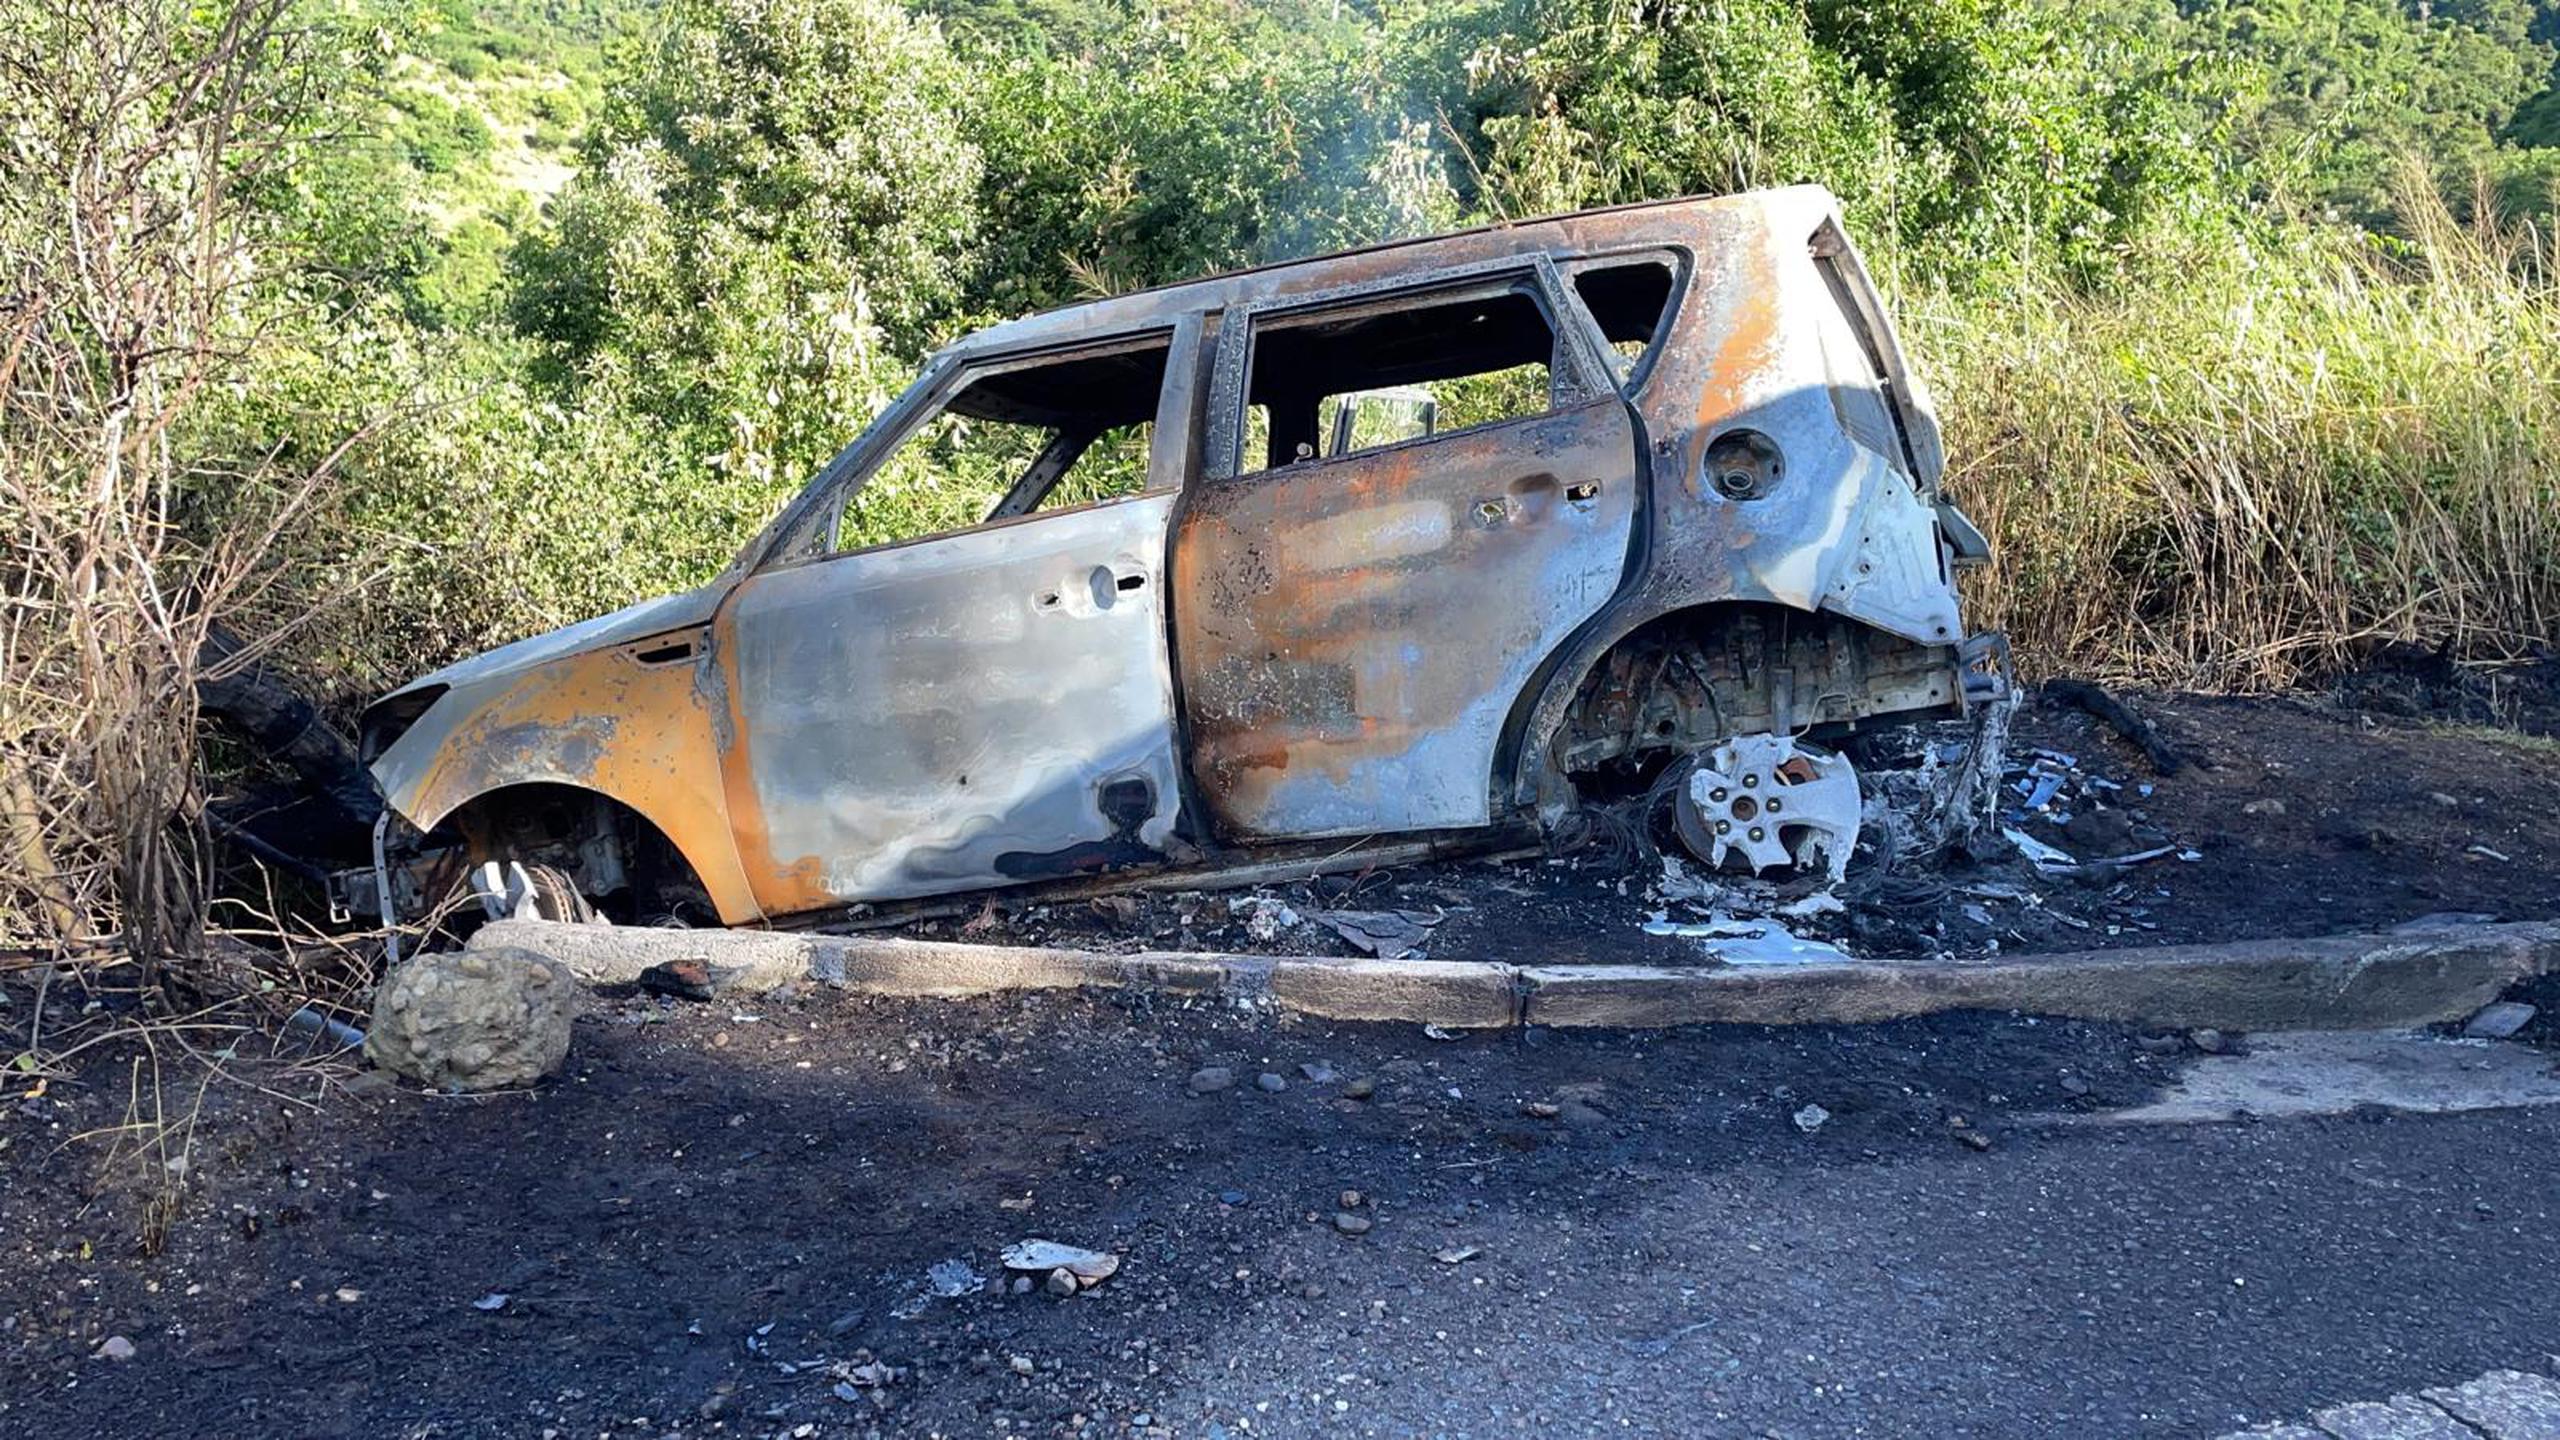 El Kia Soul del año 2015, color crema claro, hurtado en el área de Bayamón en 18 de noviembre, que se sospecha fue utilizado para huir por gatilleros que cometieron un doble asesinato en Guayama, fue quemado en Aibonito.